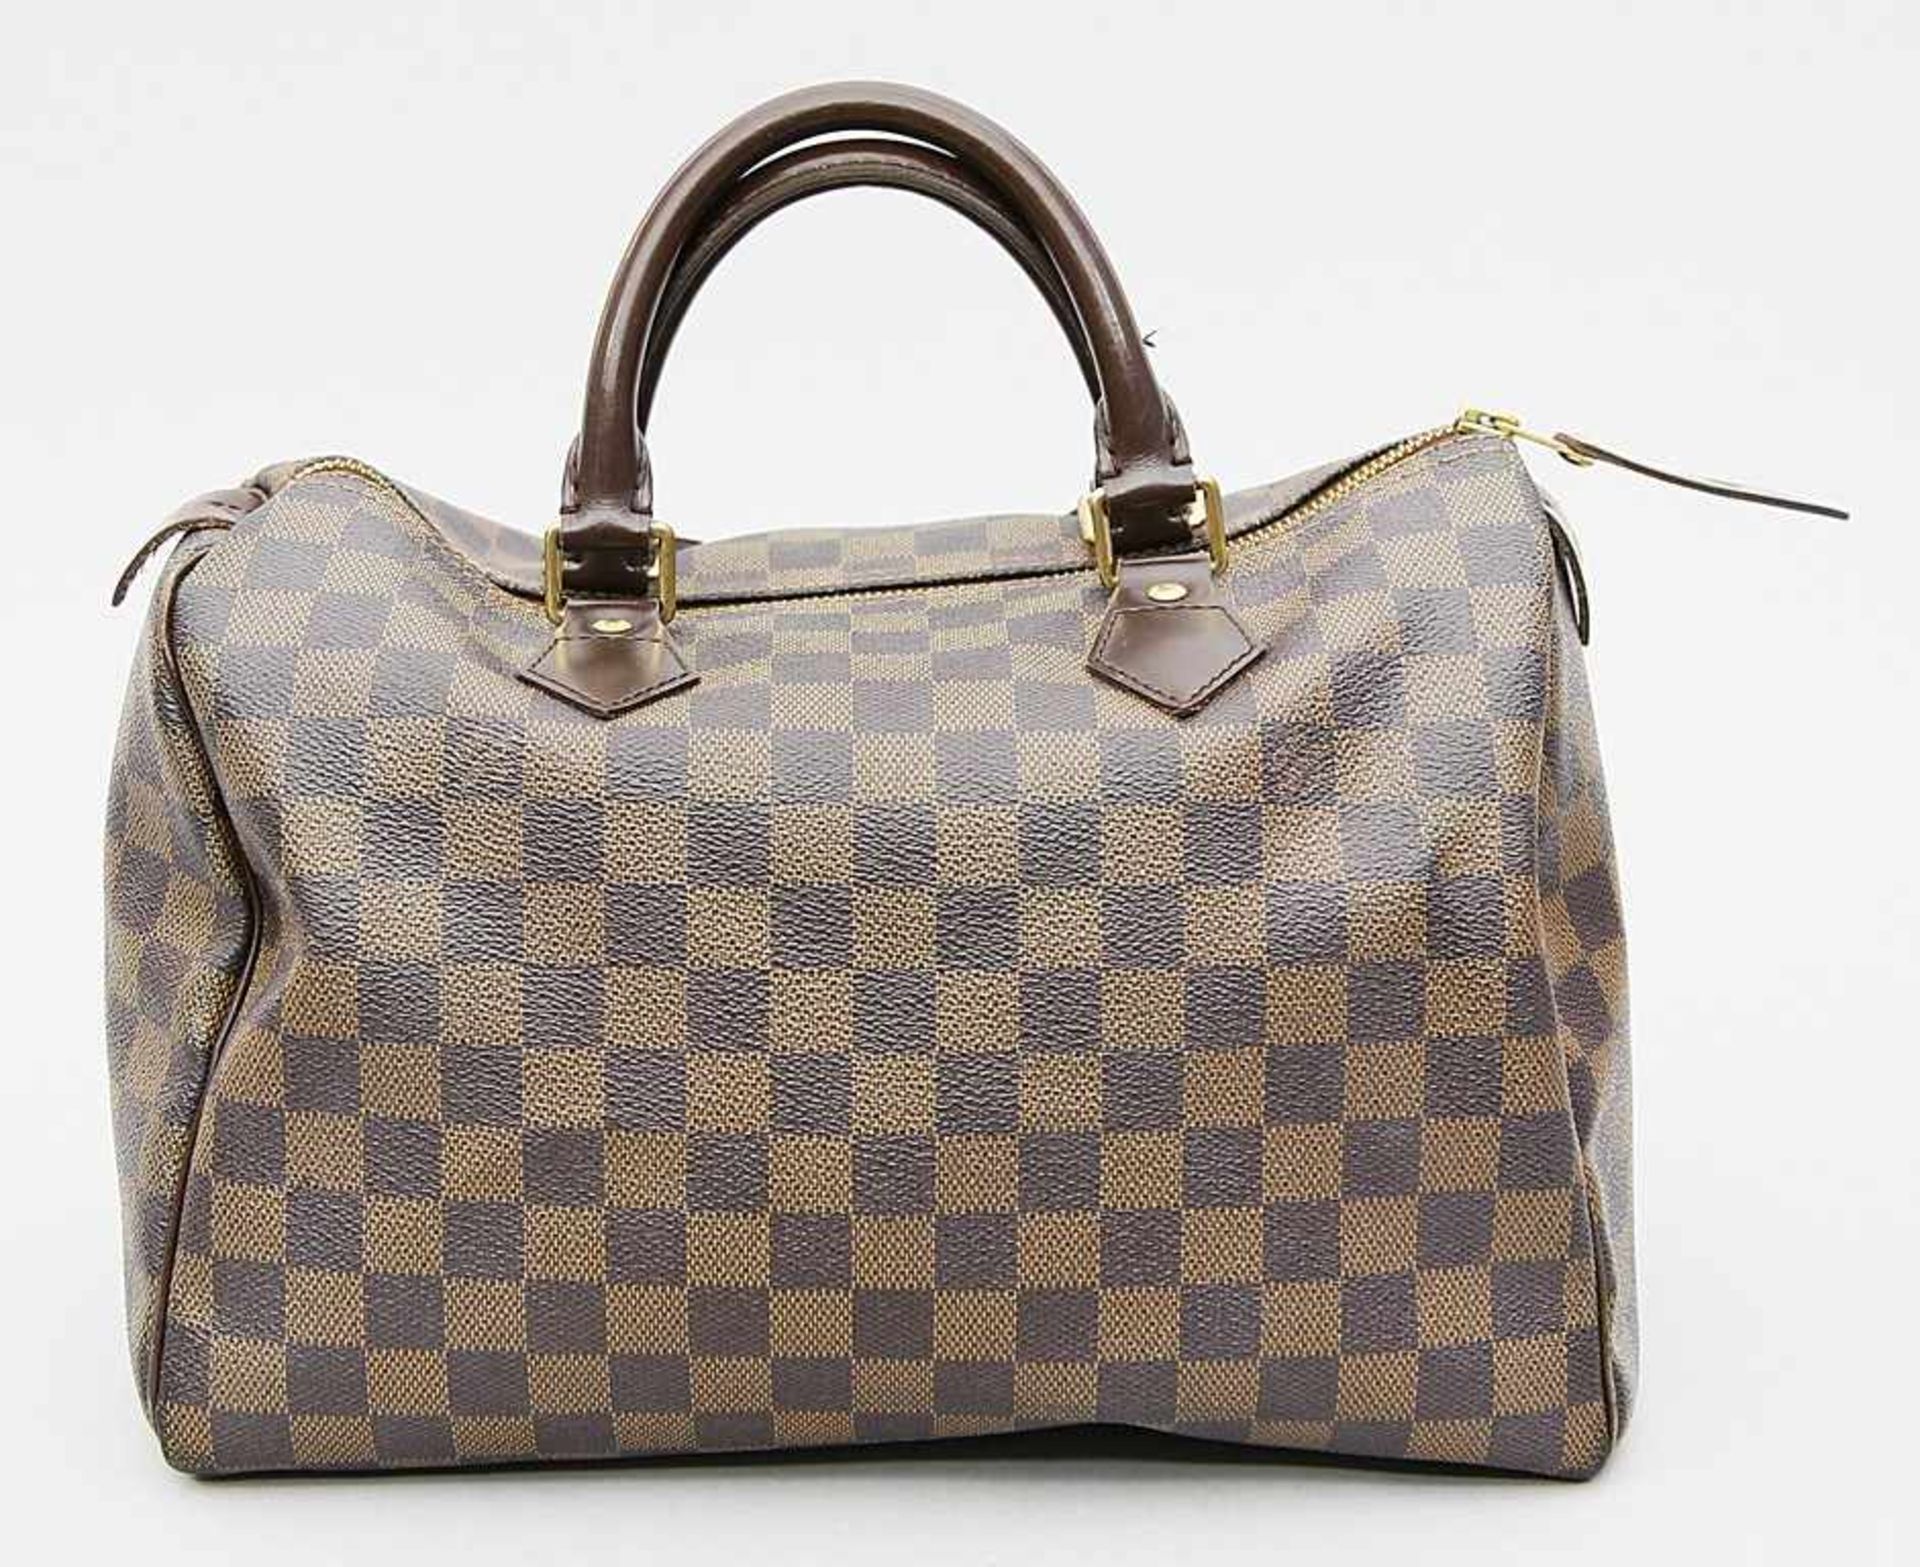 Handtasche "Speedy 30", Louis Vuitton.